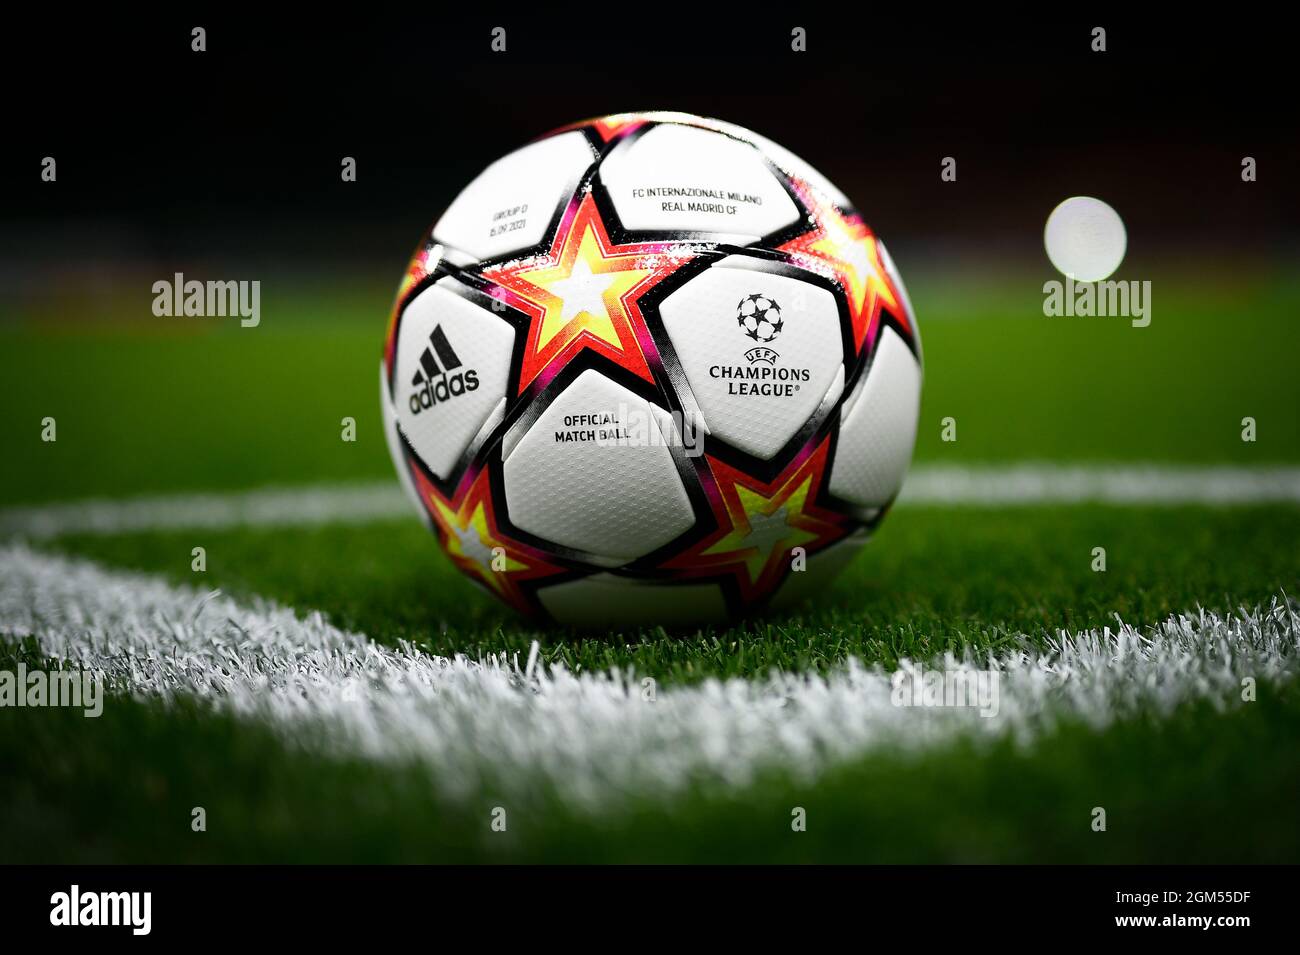  adidas Balón de partido profesional de la UEFA